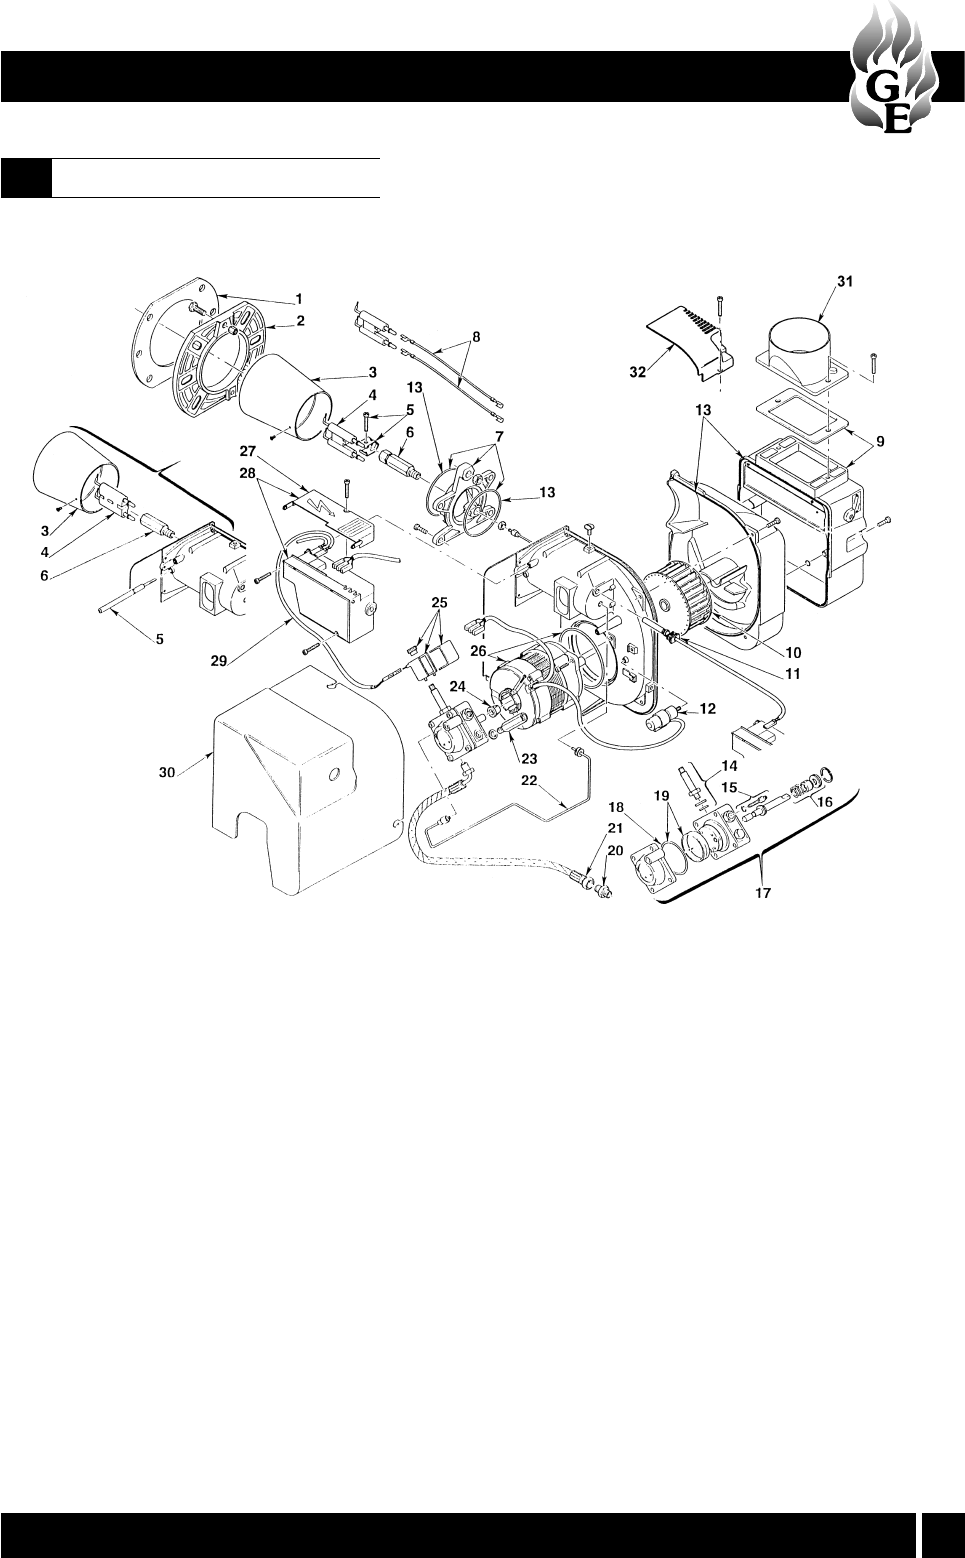 Grant euroflame 50 90 boiler manual